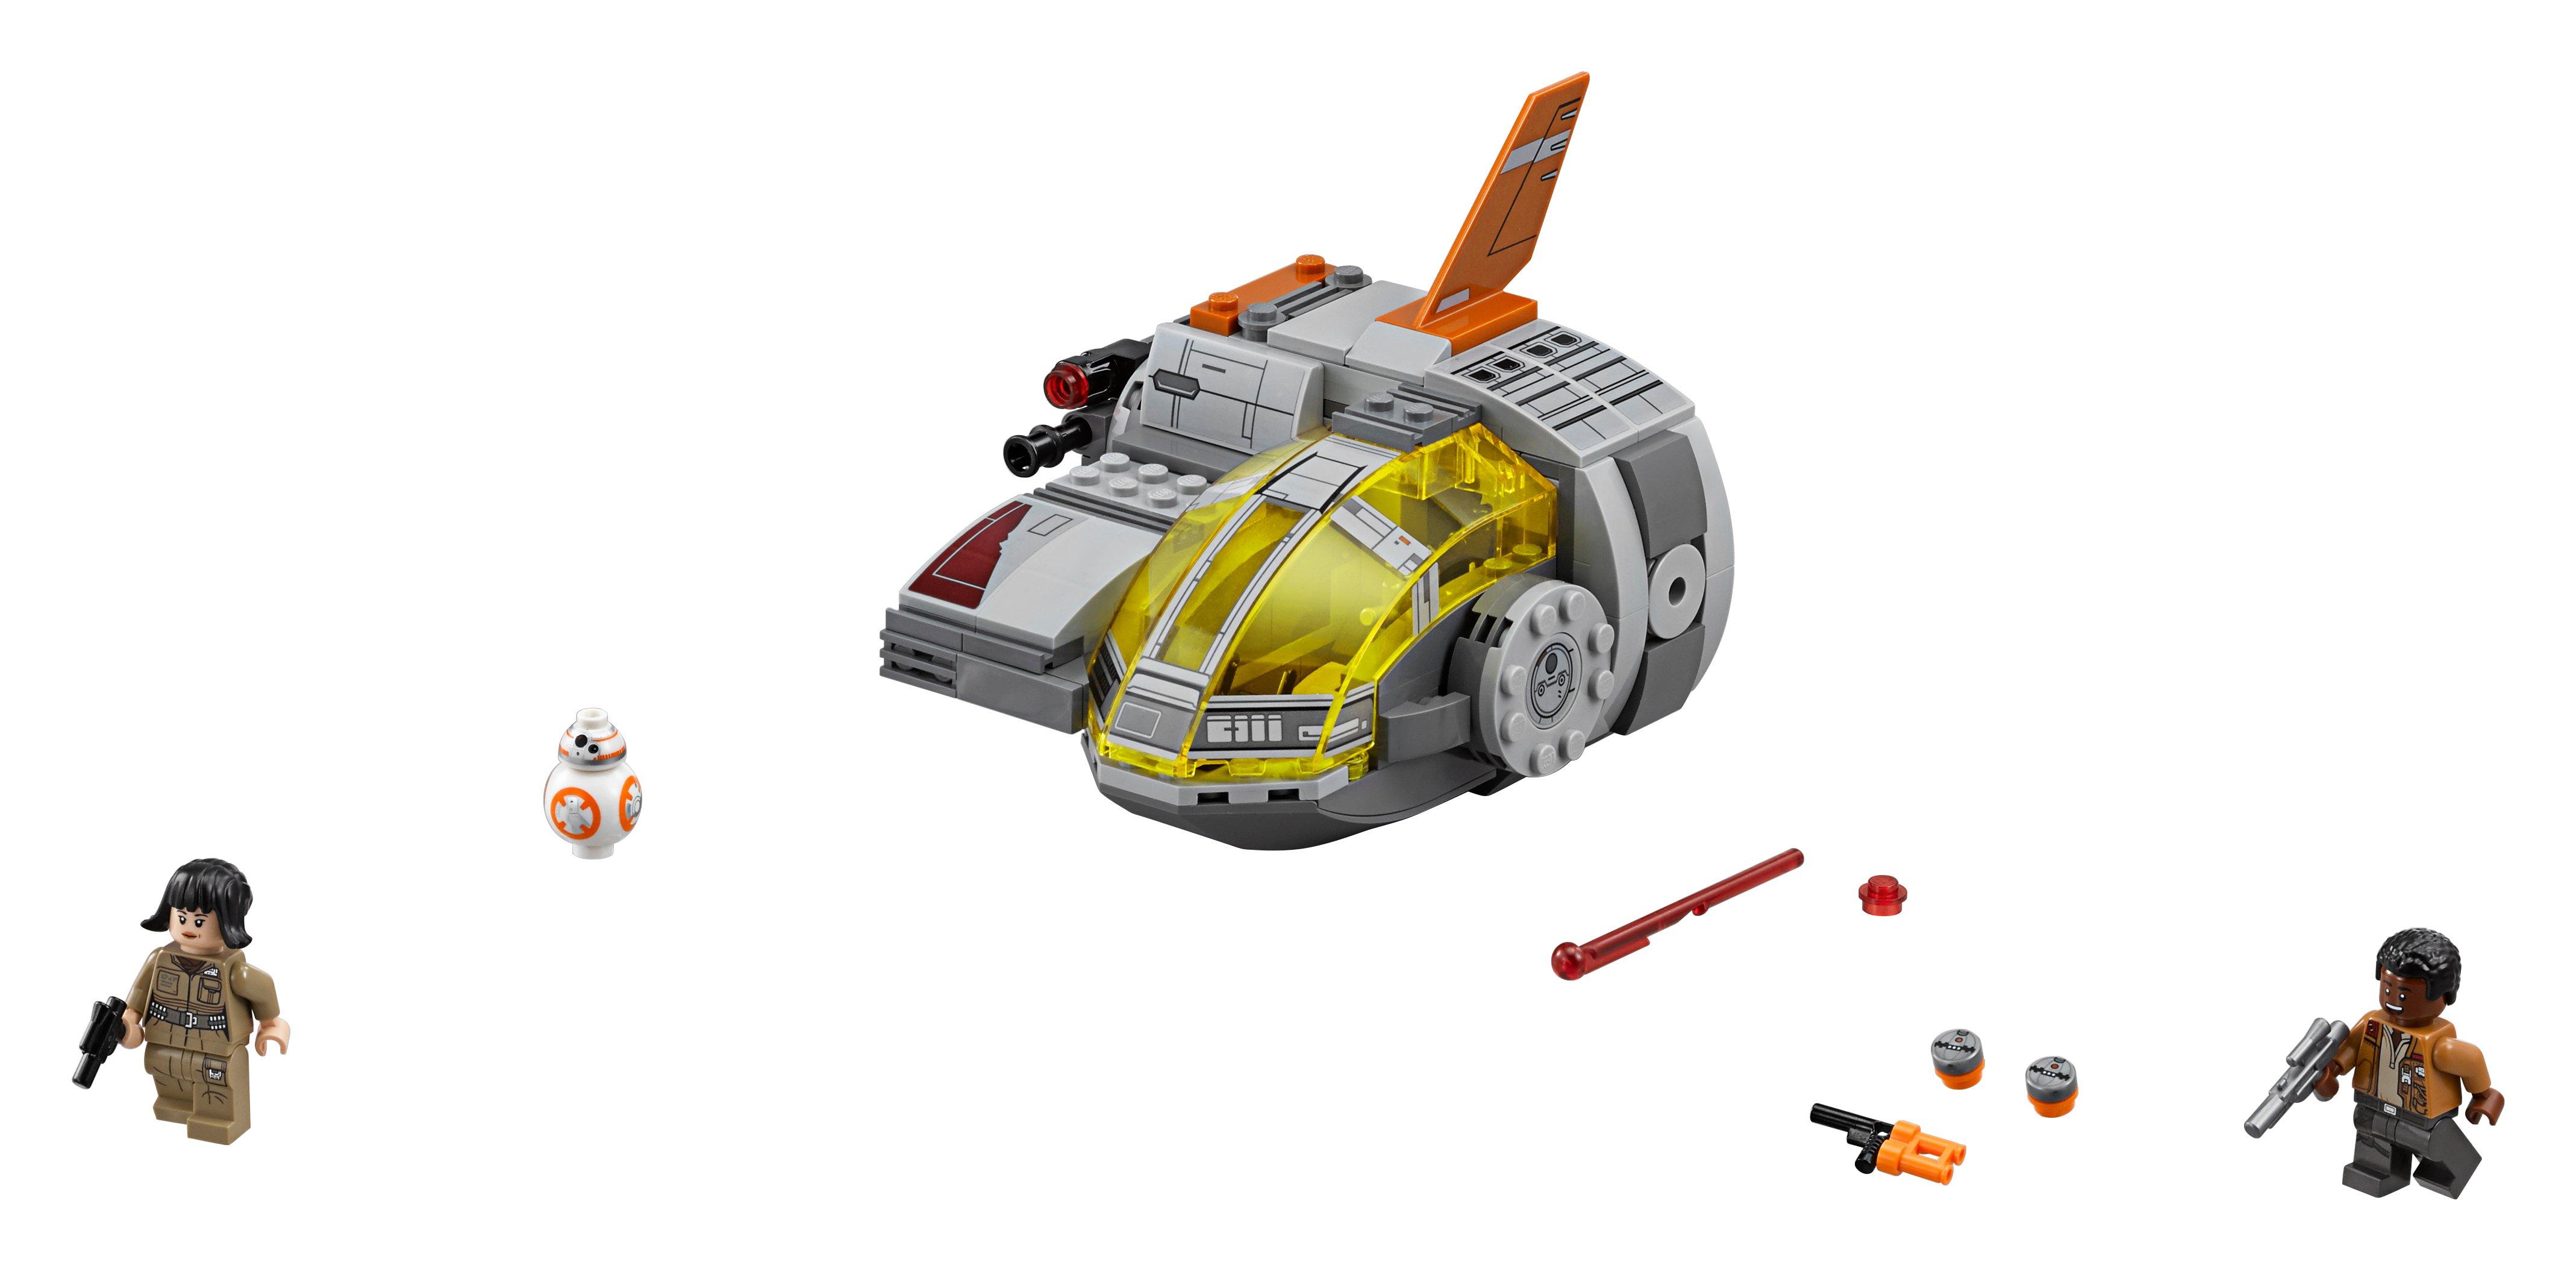 LEGO®  75176 Resistance Transport Pod™ 